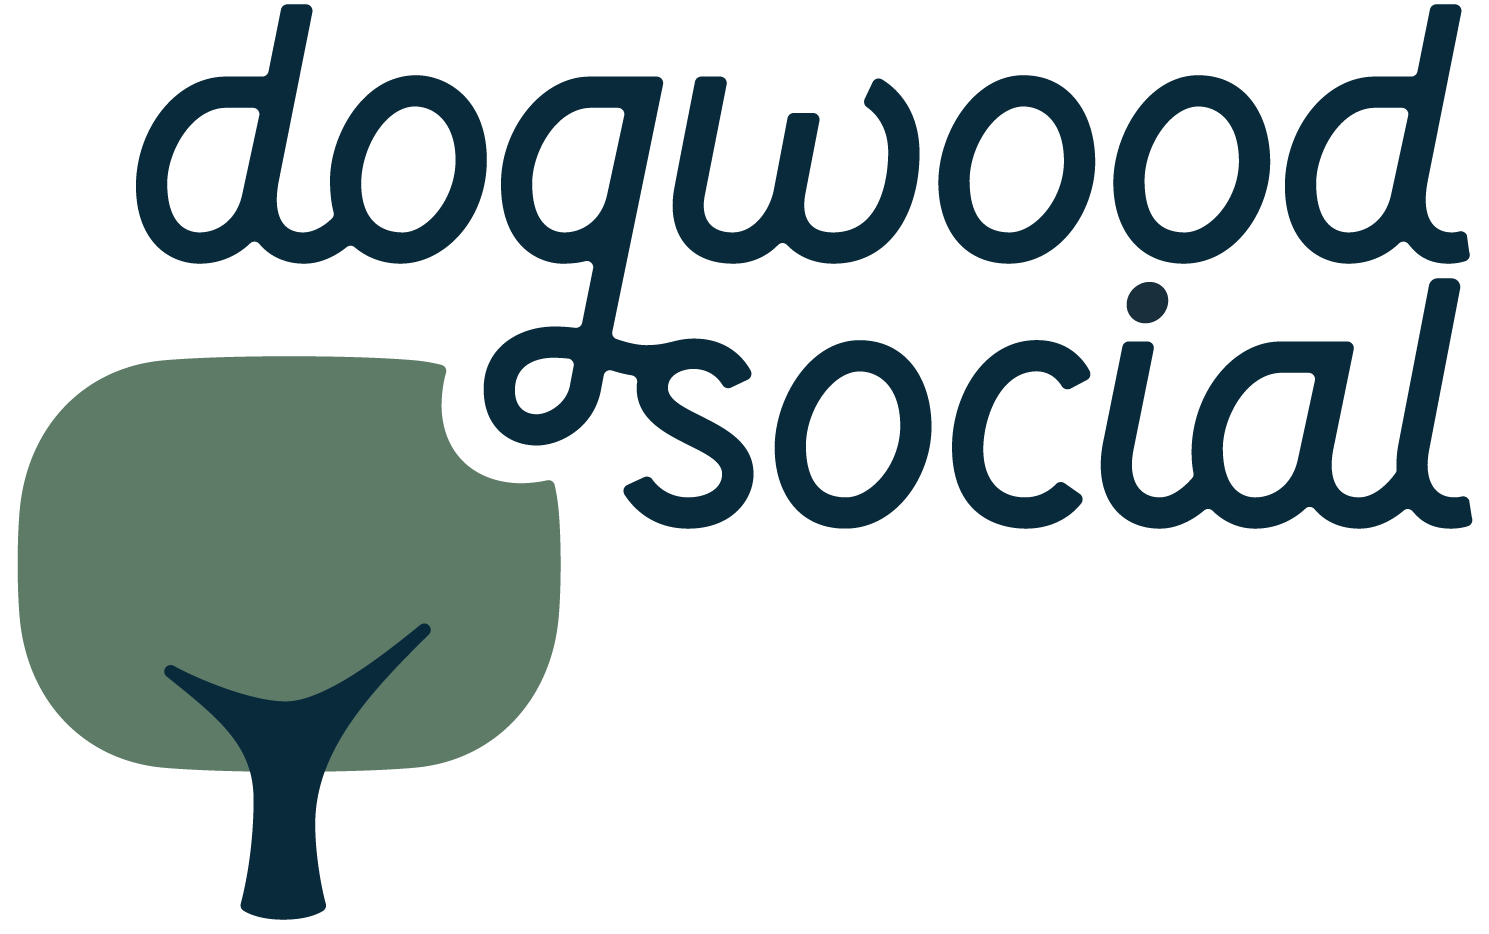 Dogwood Social